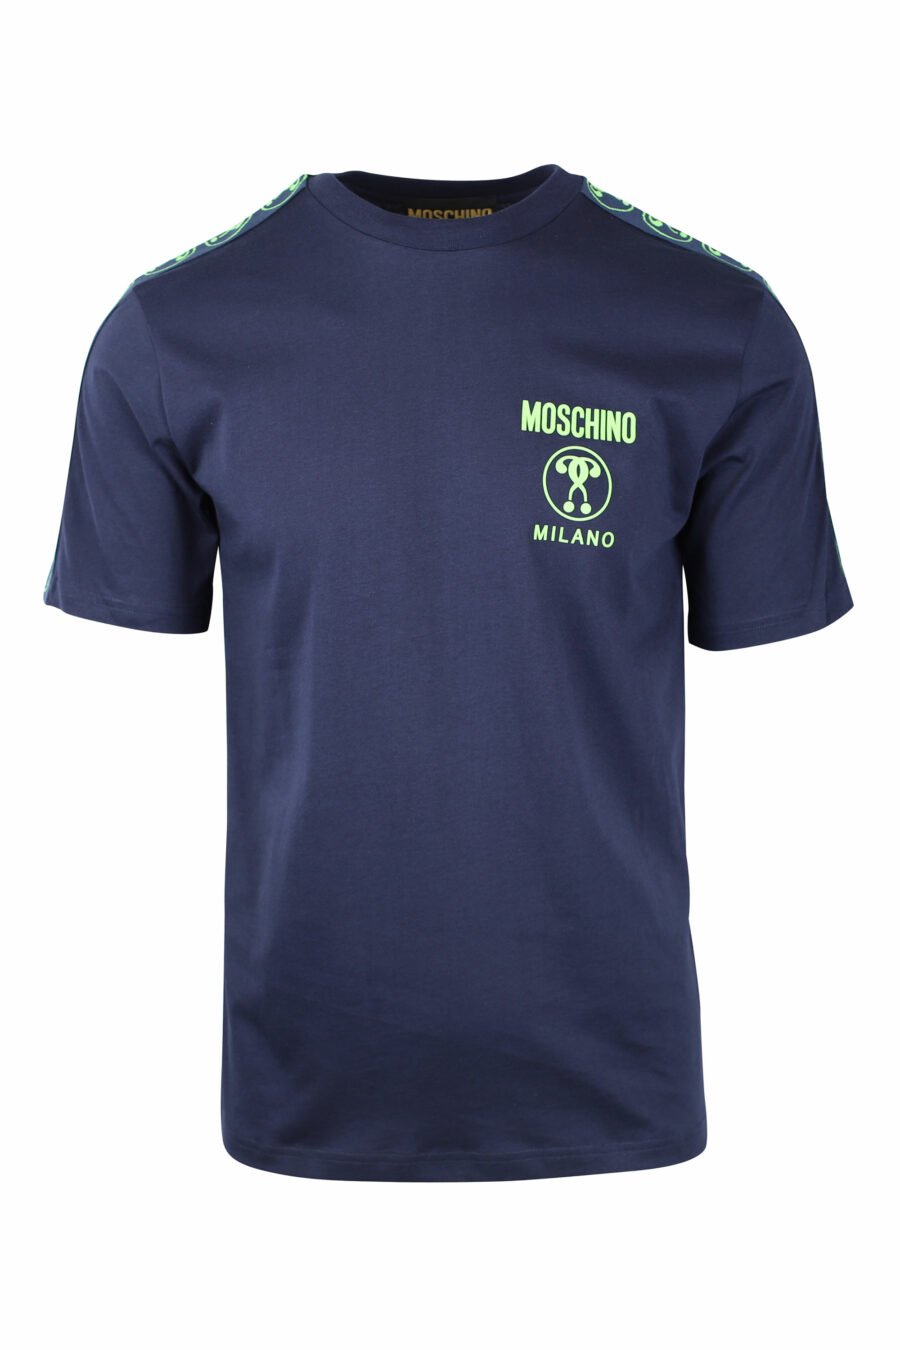 Camiseta azul oscura con minilogo doble pregunta en verde - IMG 1439